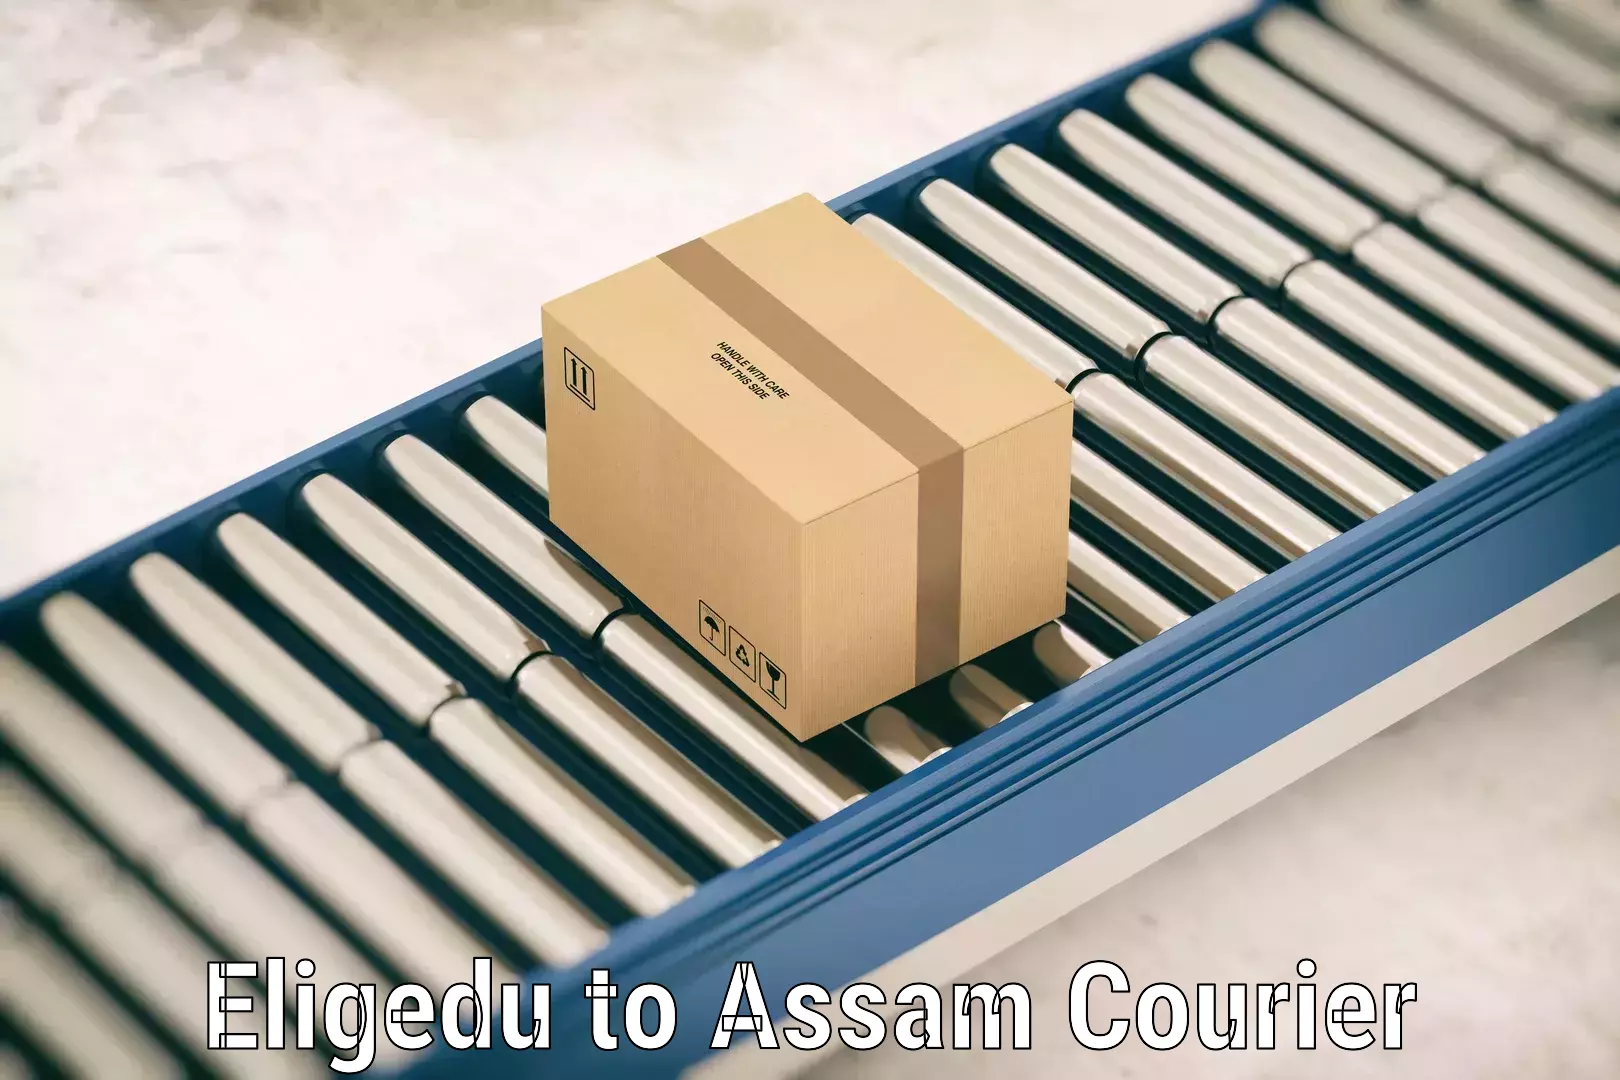 Door to door luggage delivery in Eligedu to Assam